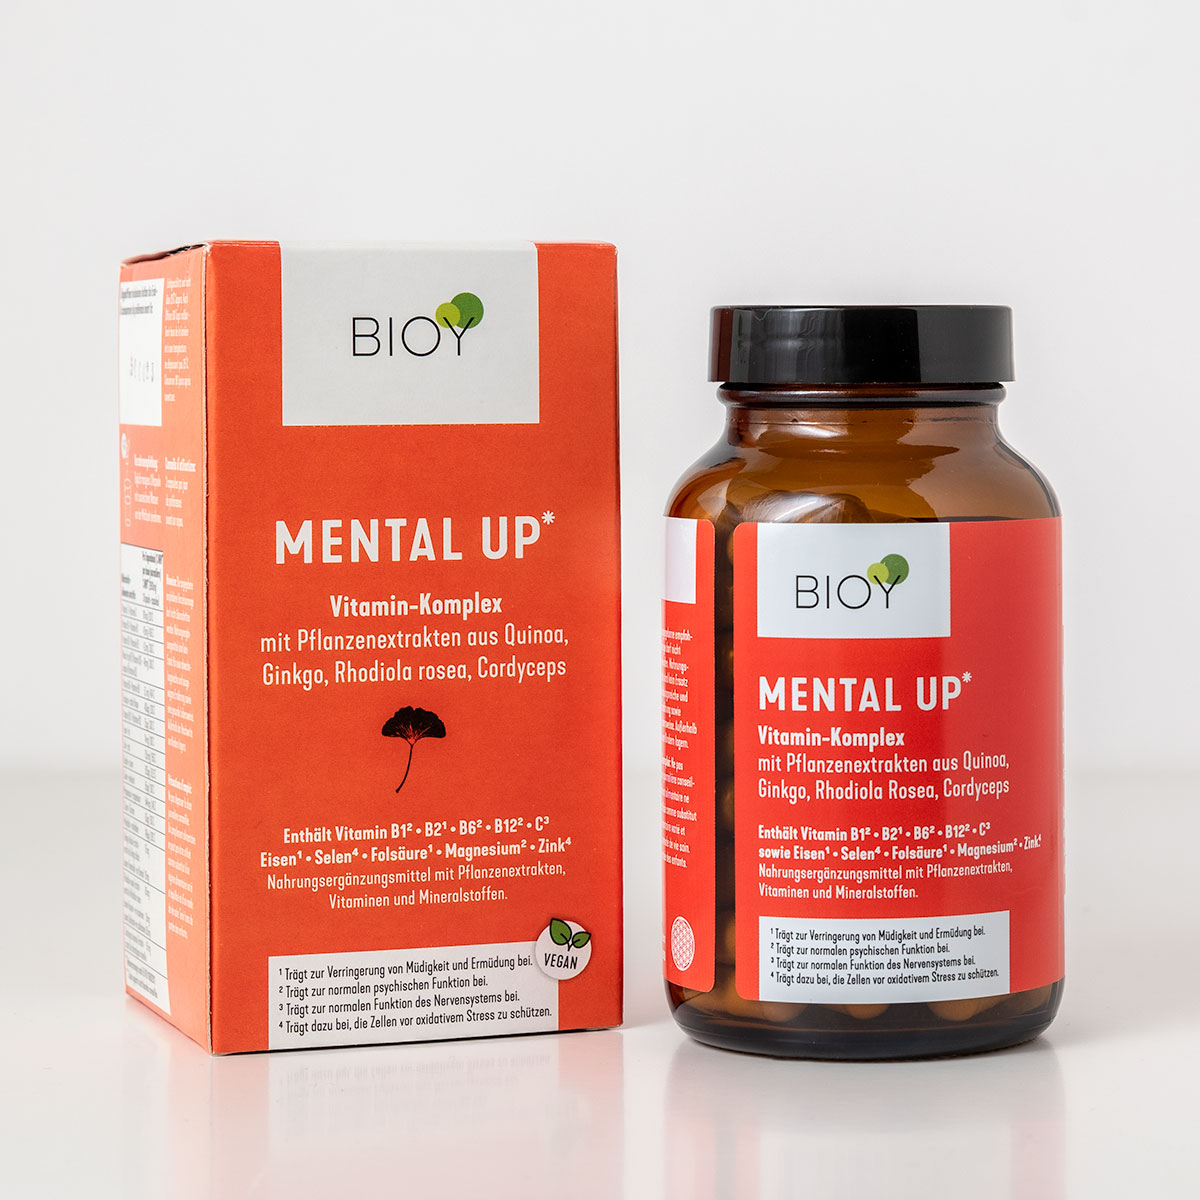 BIOY Mental up Специализированный комплекс из экстрактов растений, витаминов и минералов, 90 капсул